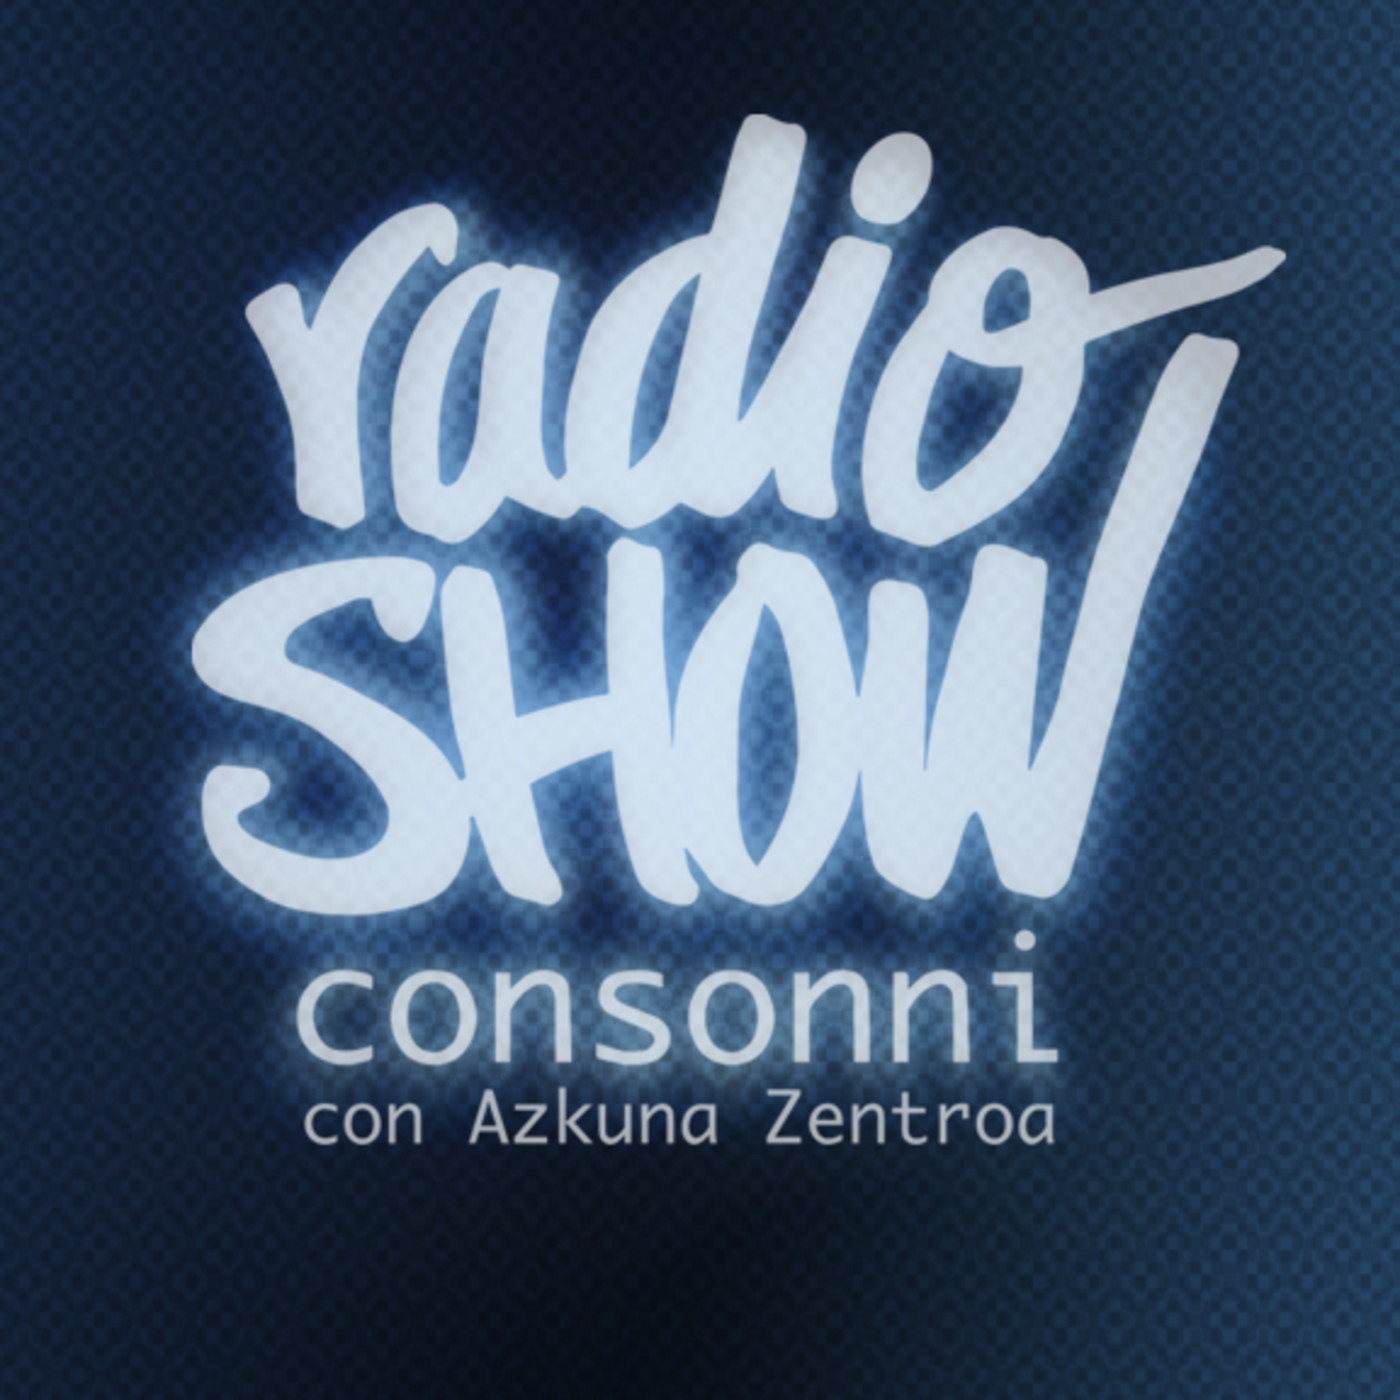 Radio Show consonni con Azkuna Zentroa “Arte y Radio”